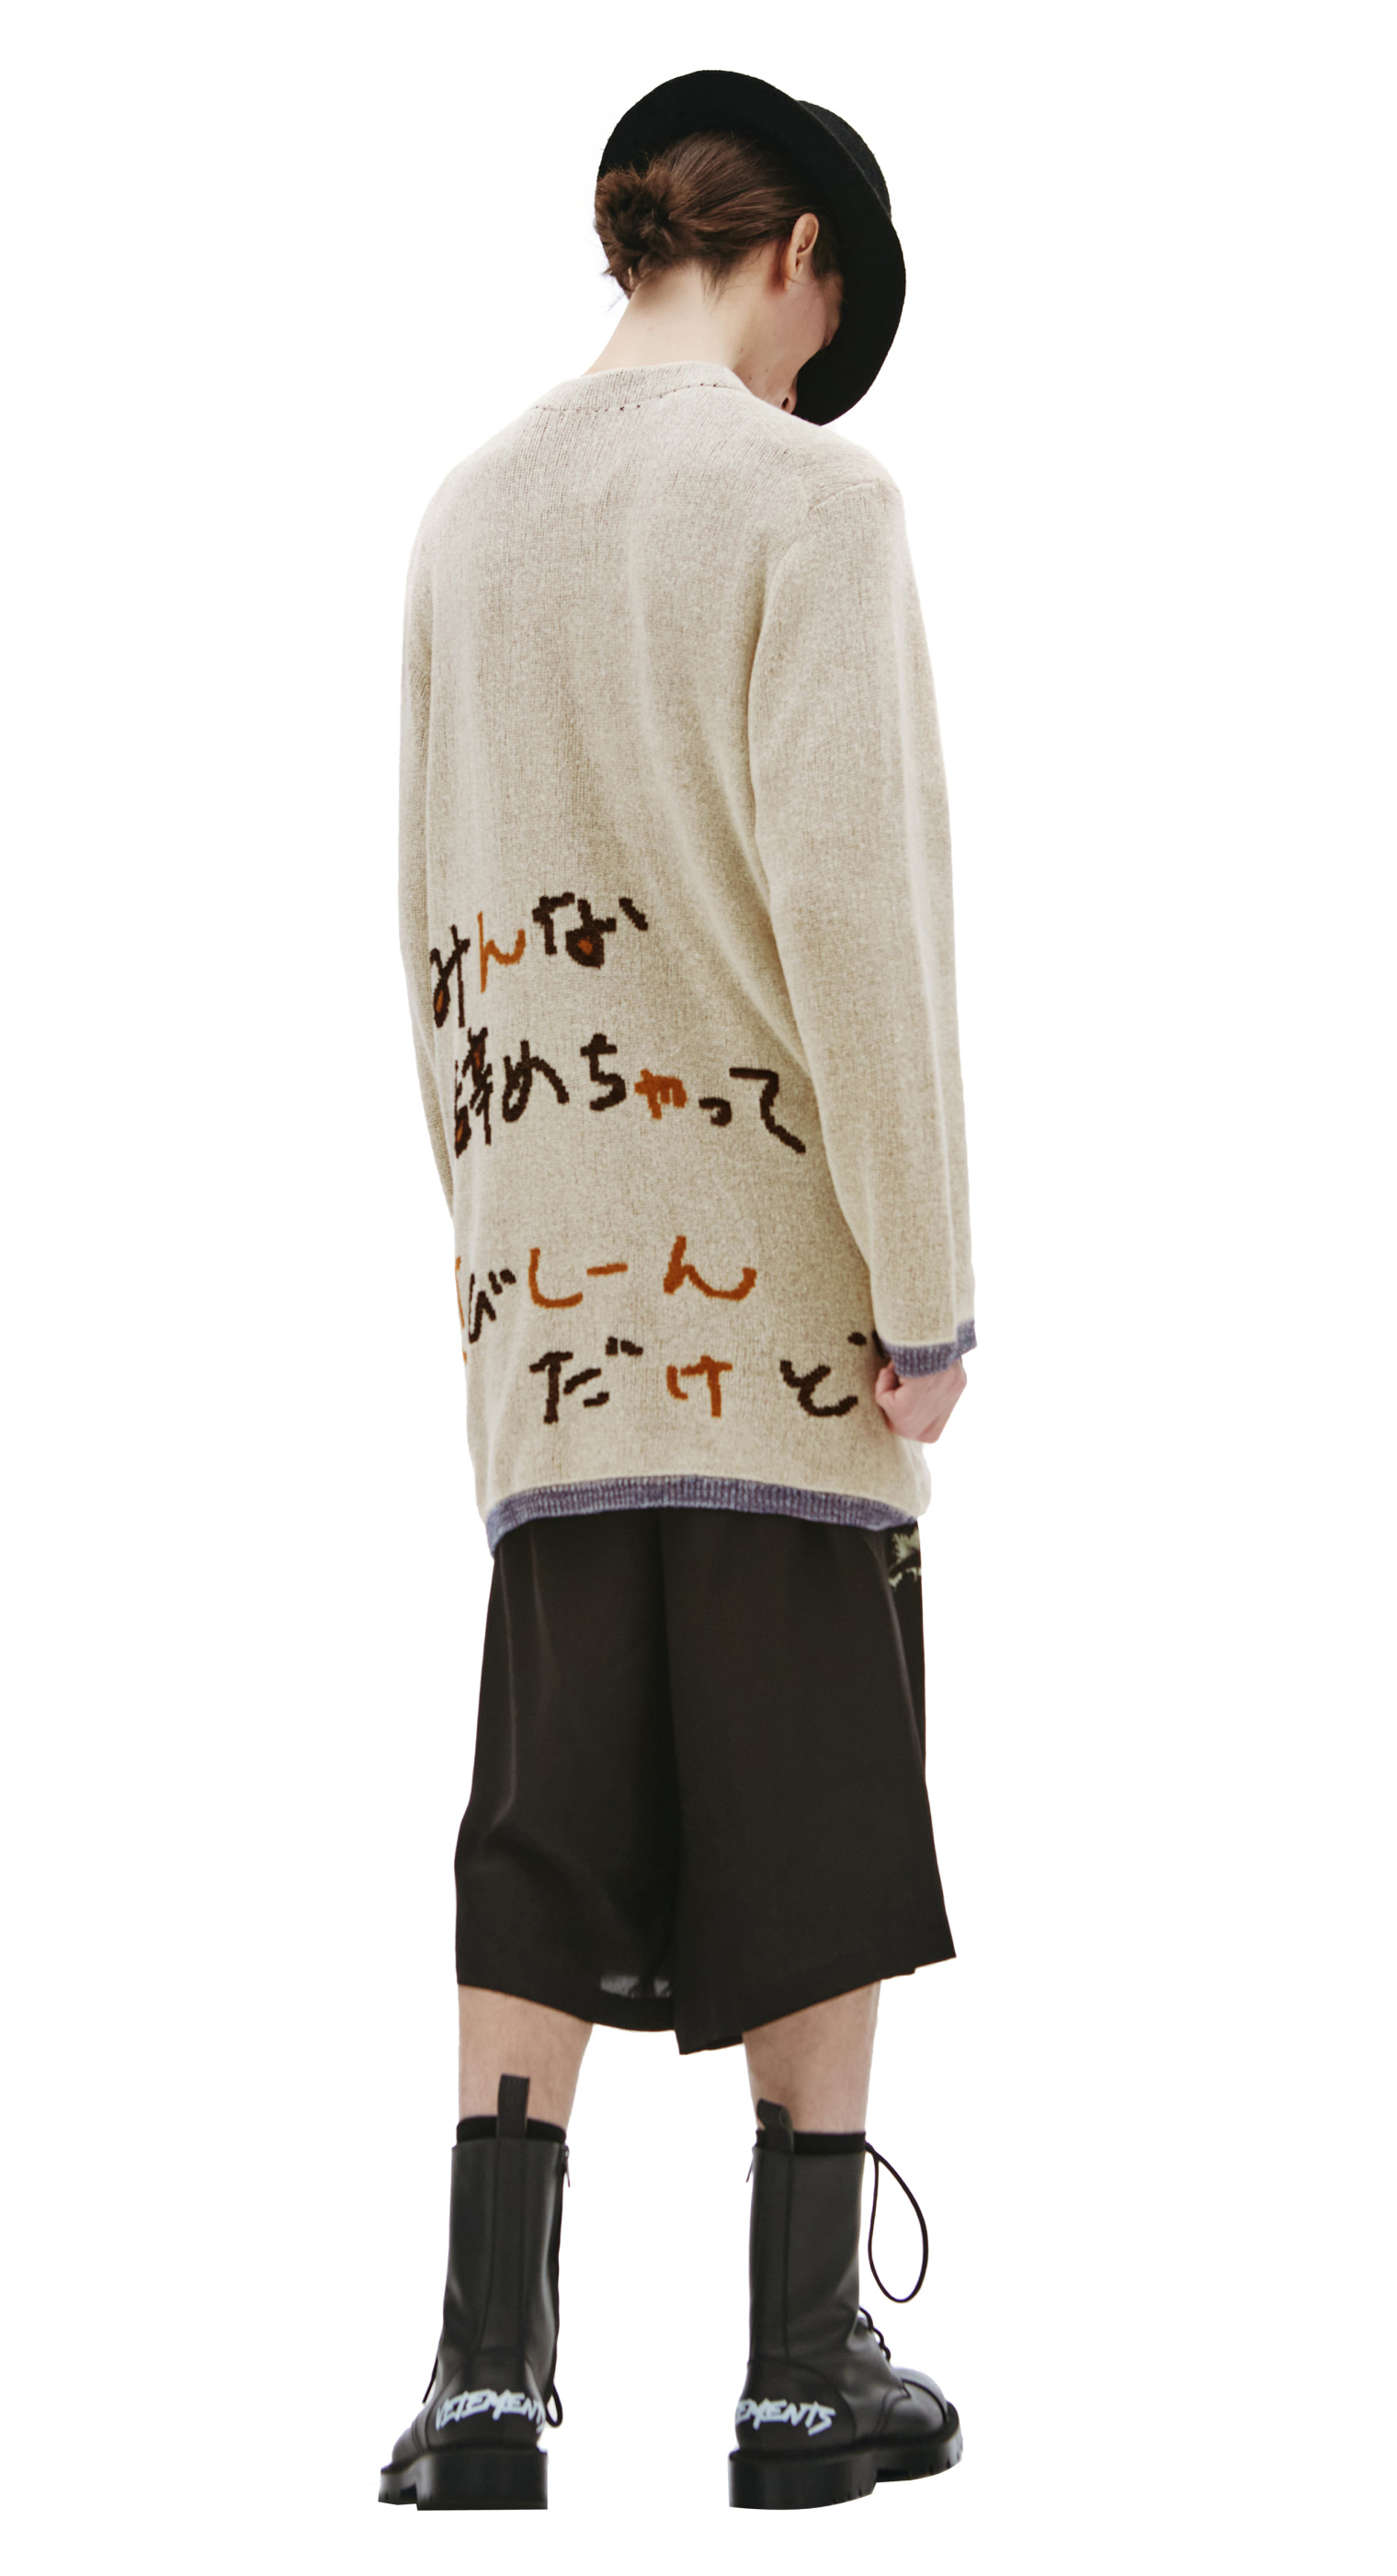 Yohji Yamamoto Вязаный кардиган с принтом креветки